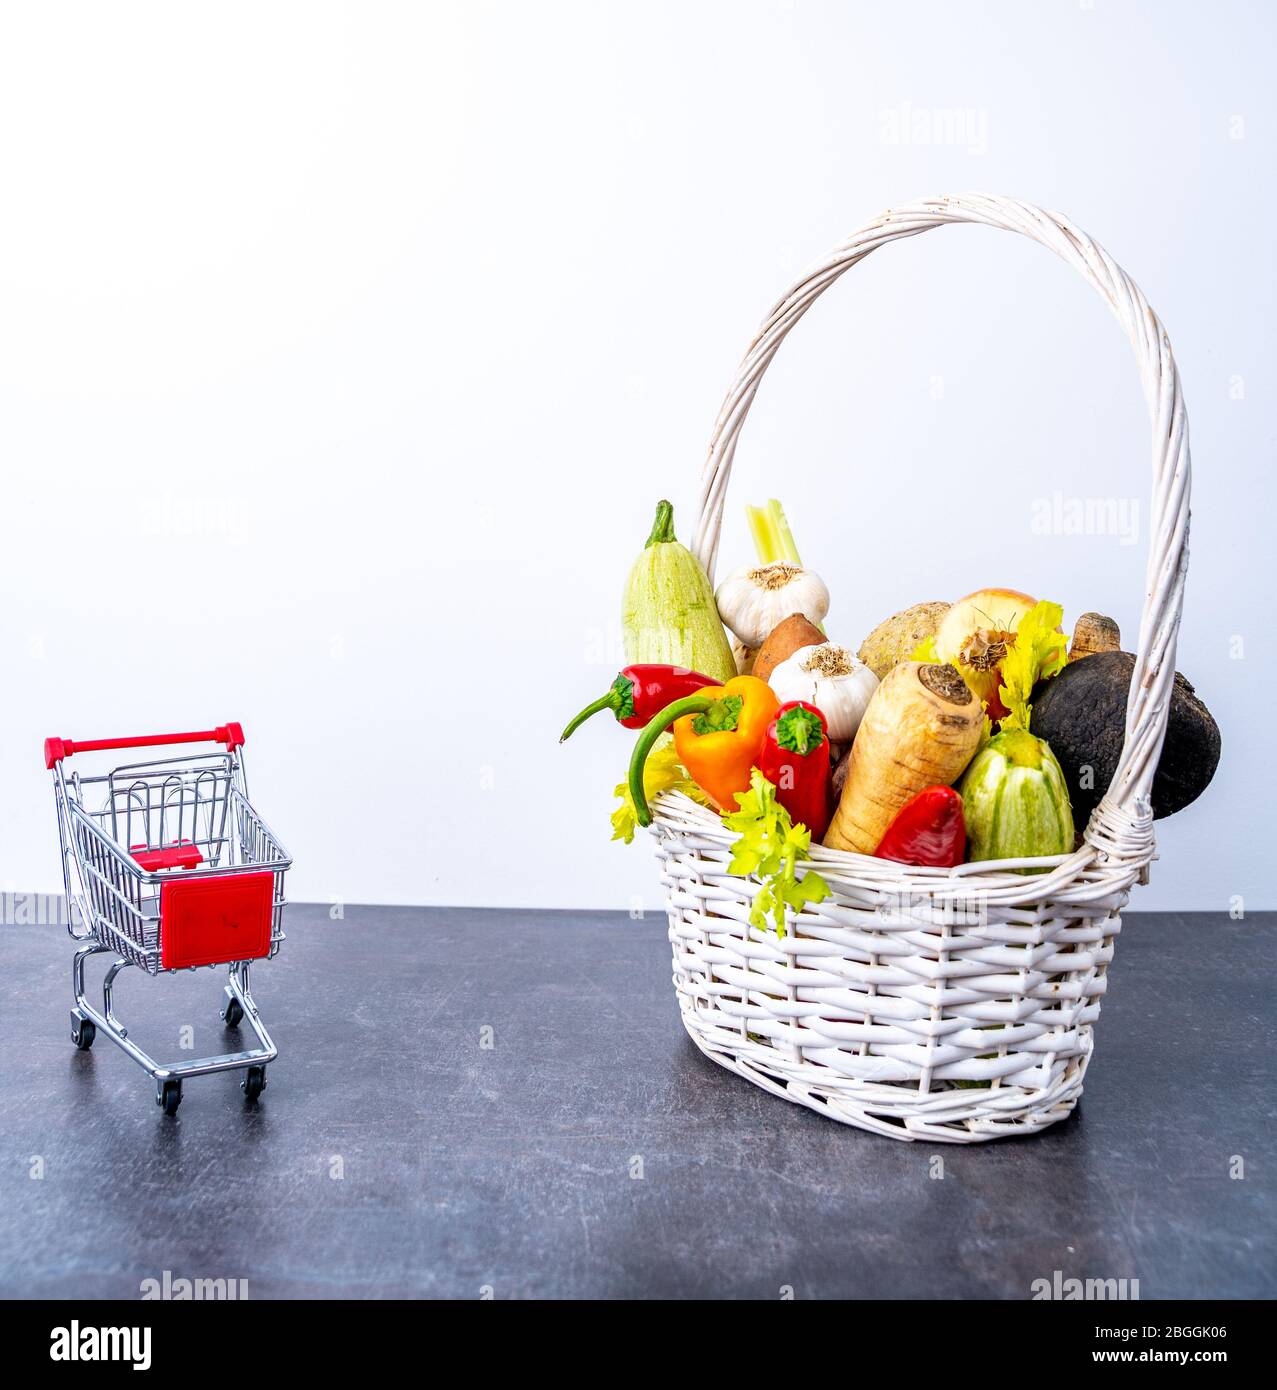 Cesta de comestibles llena de verduras saludables Foto de stock